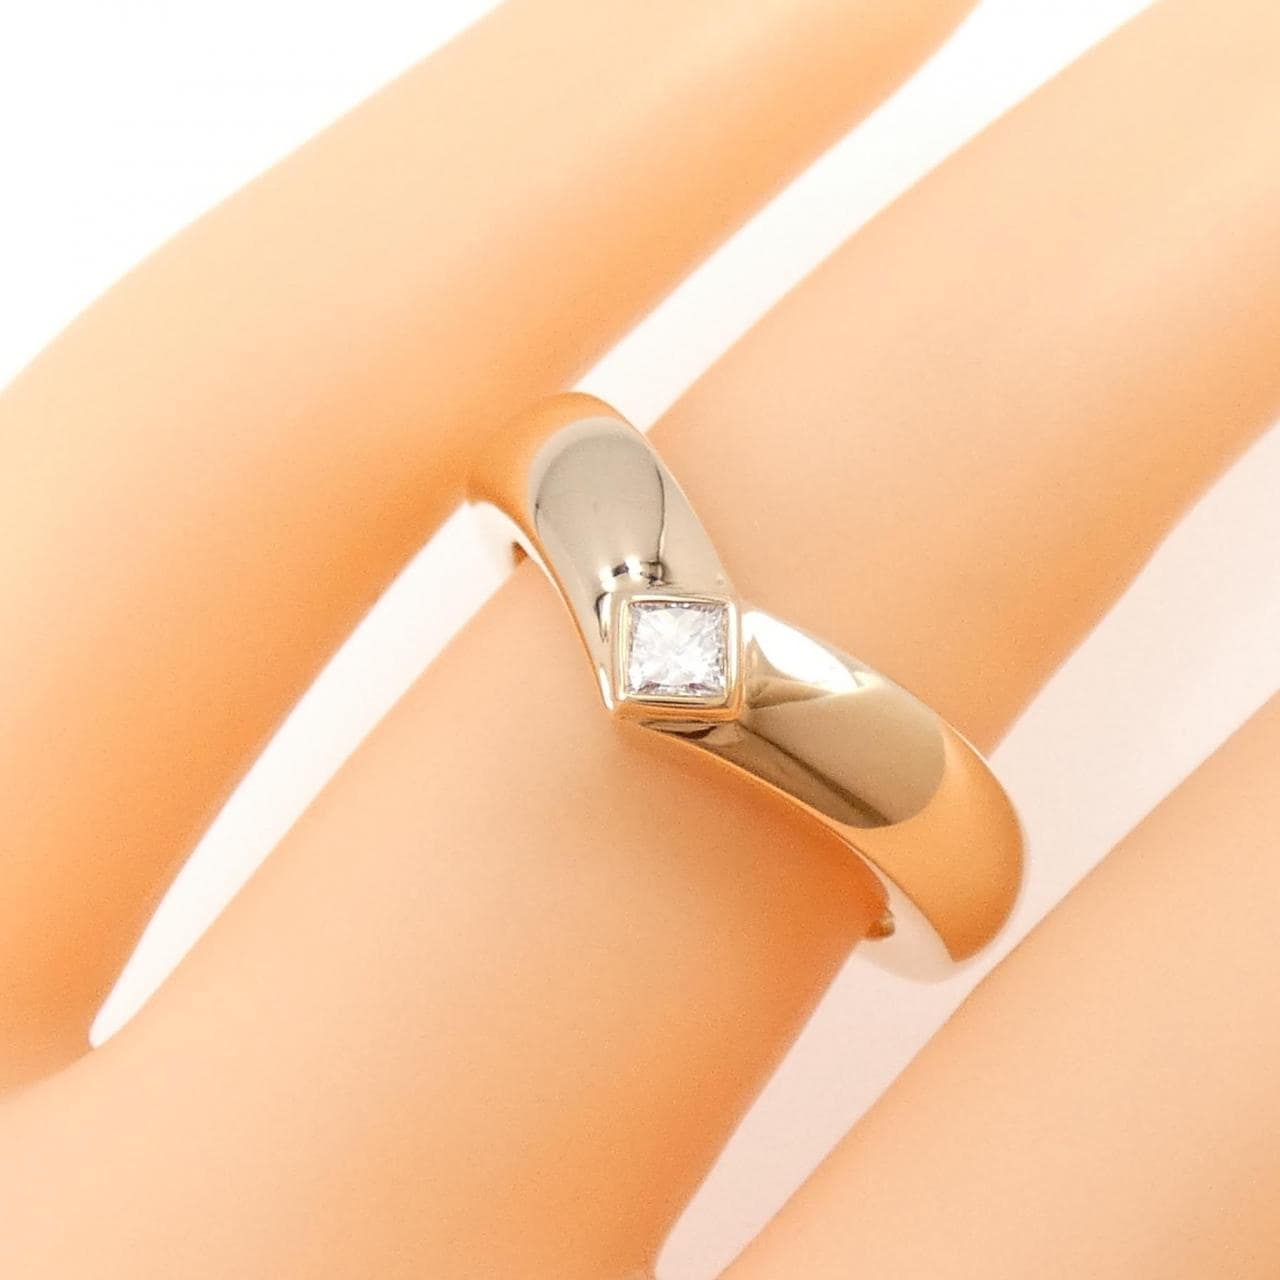 Cartier triandre ring